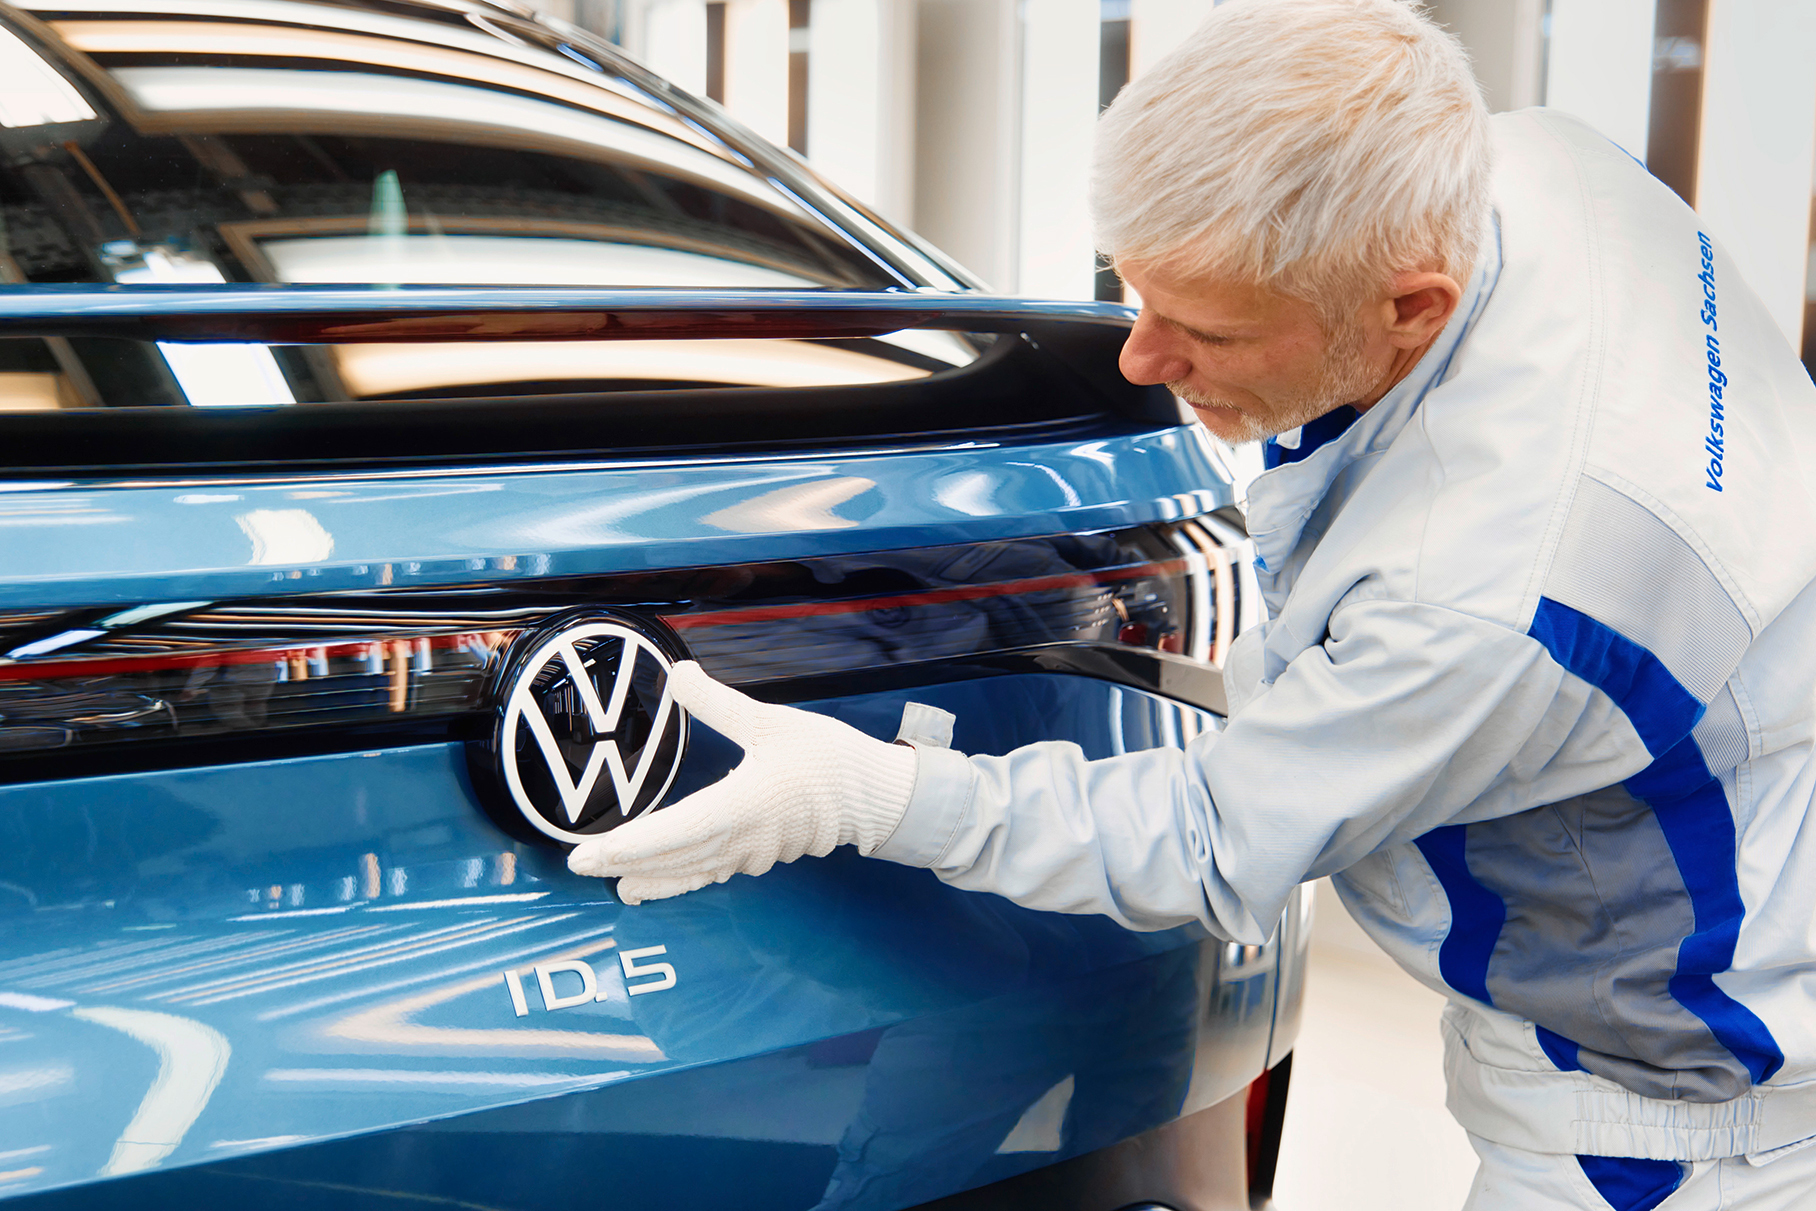 Строительство завода Volkswagen стоимостью 2 млрд евро под вопросом